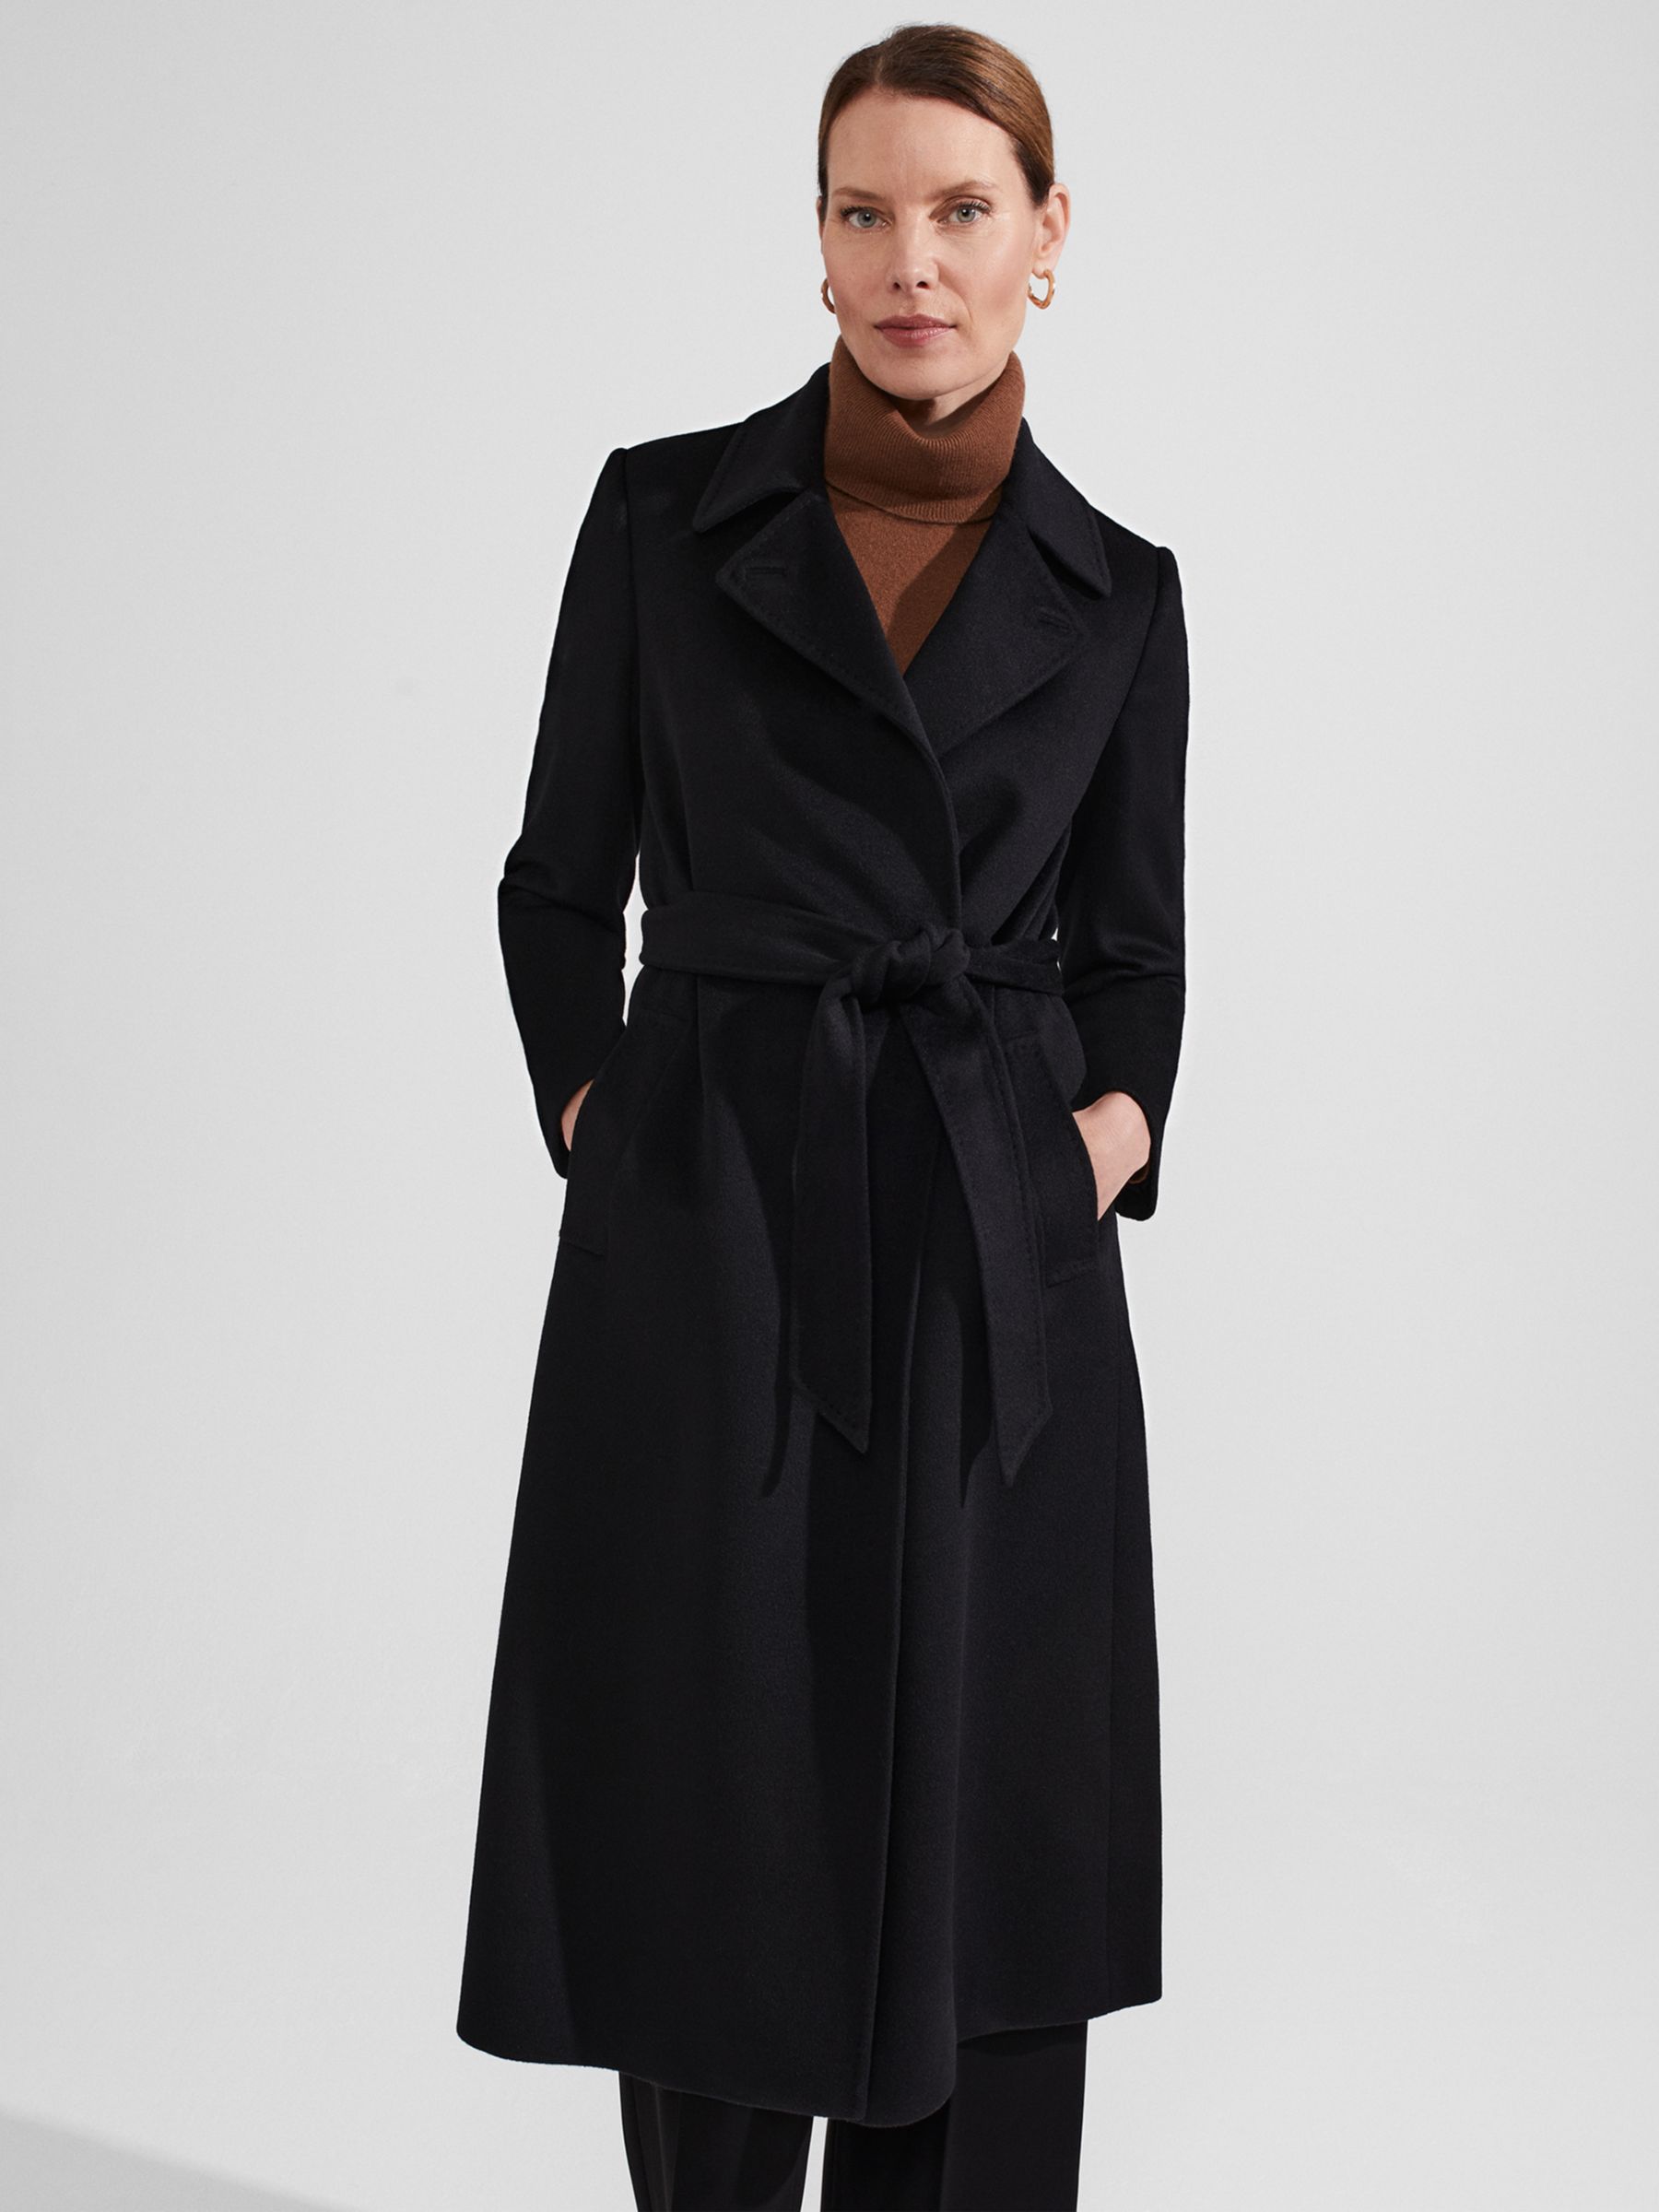 Hobbs Livia Wool Coat, Black at John Lewis & Partners